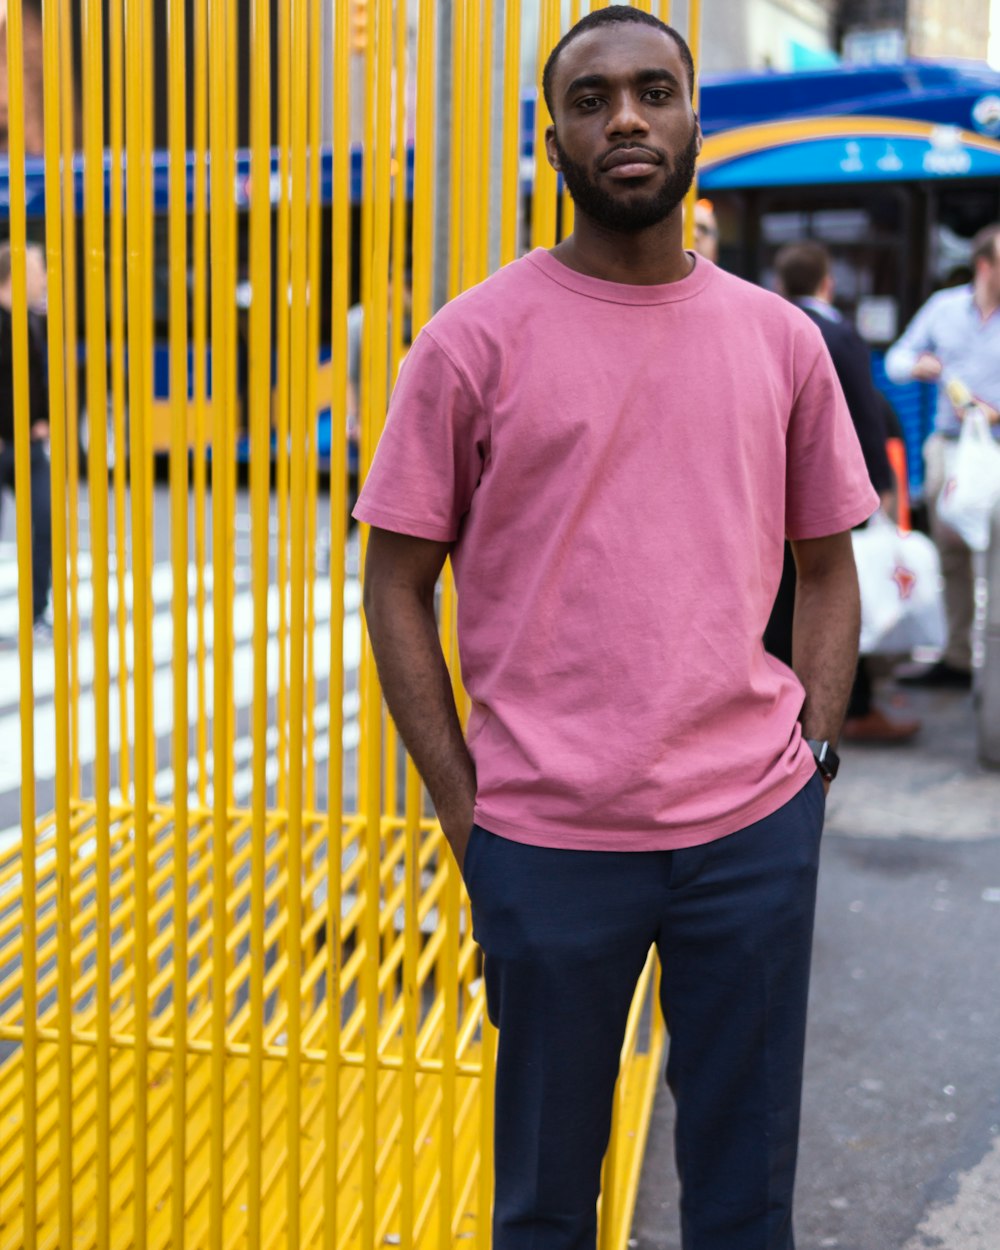 man standing while wearing pink t-shirt